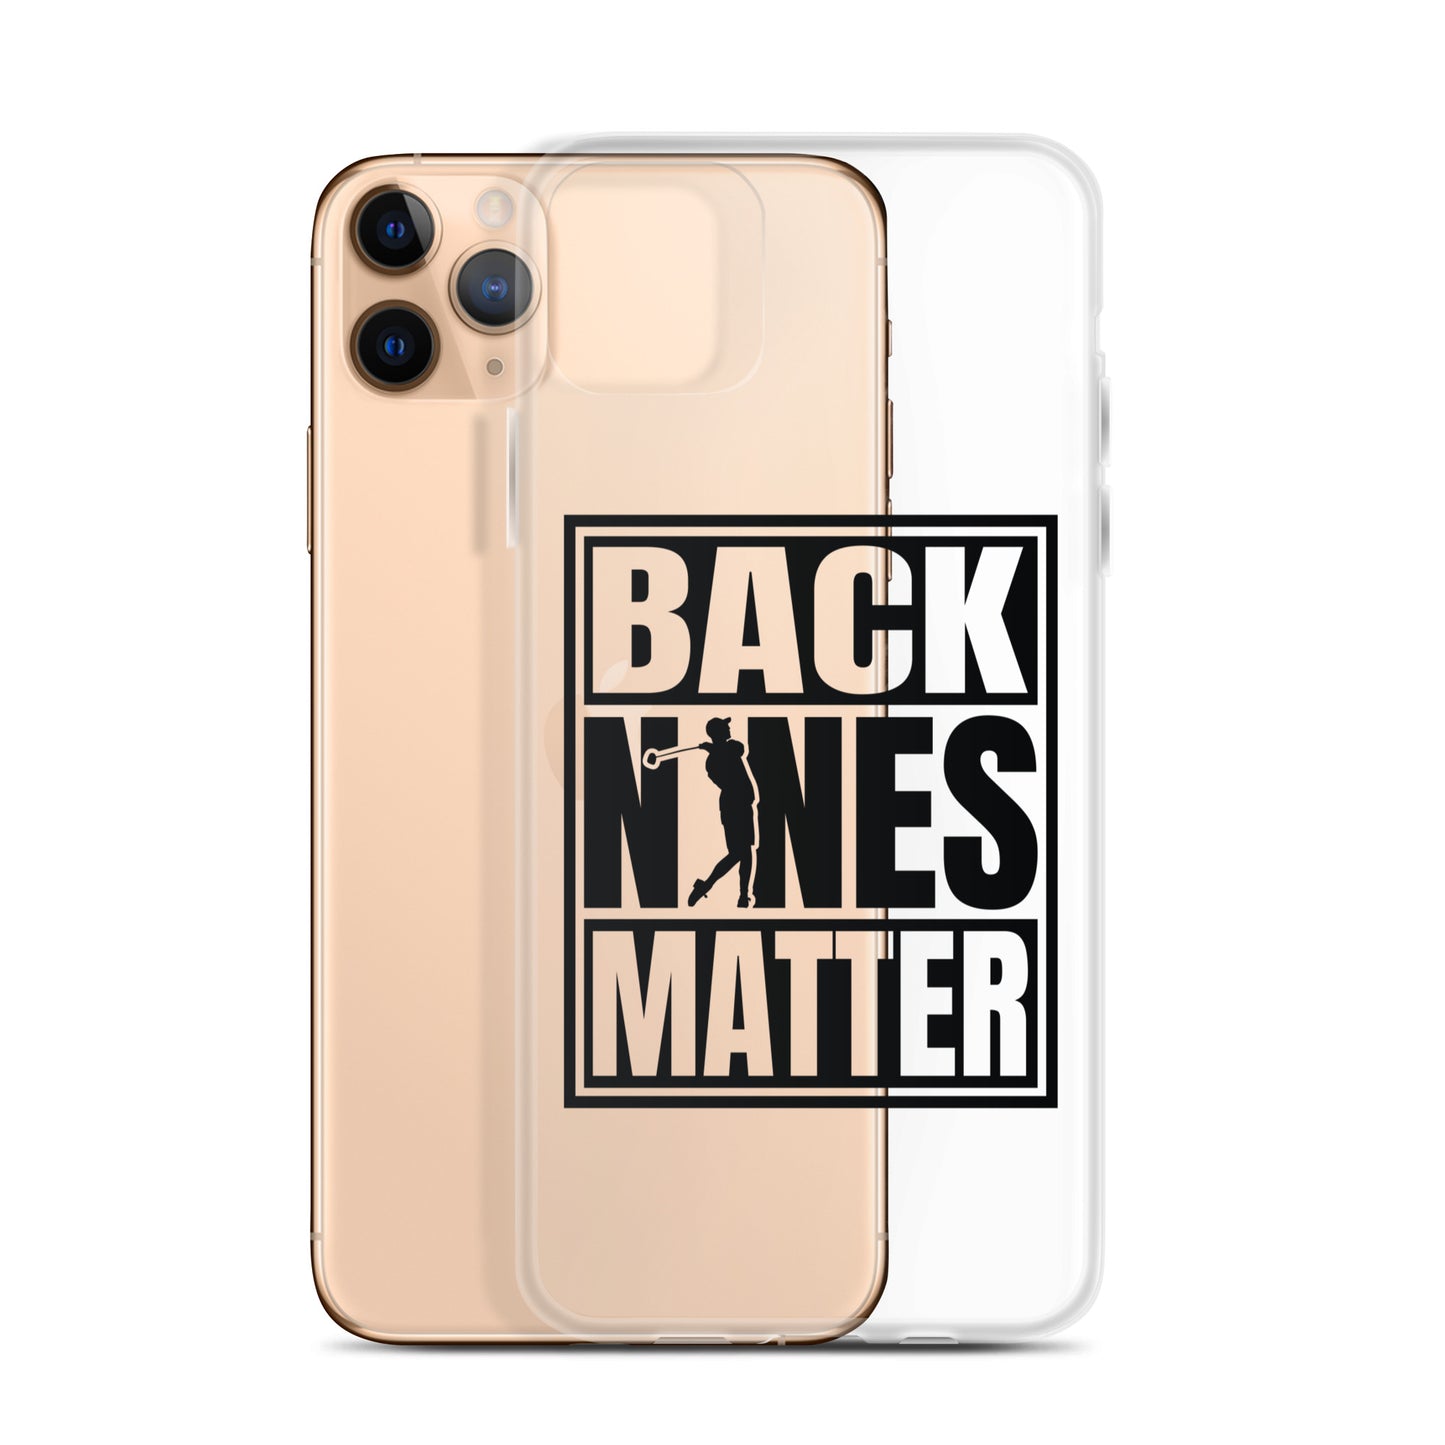 Back Nines Matter iPhone Case